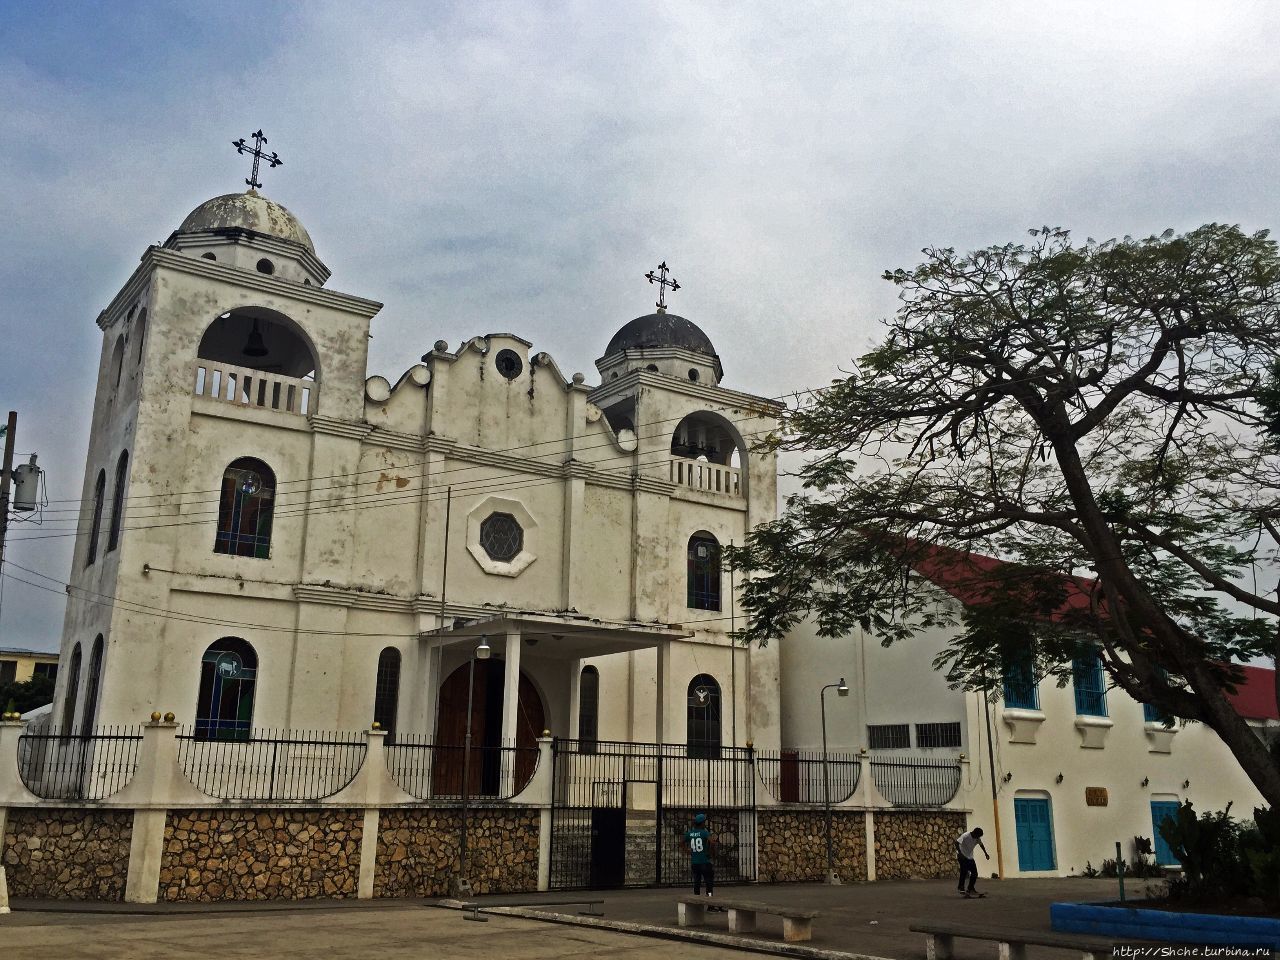 Собор святой Богоматери-Целительницы Флорес, Гватемала